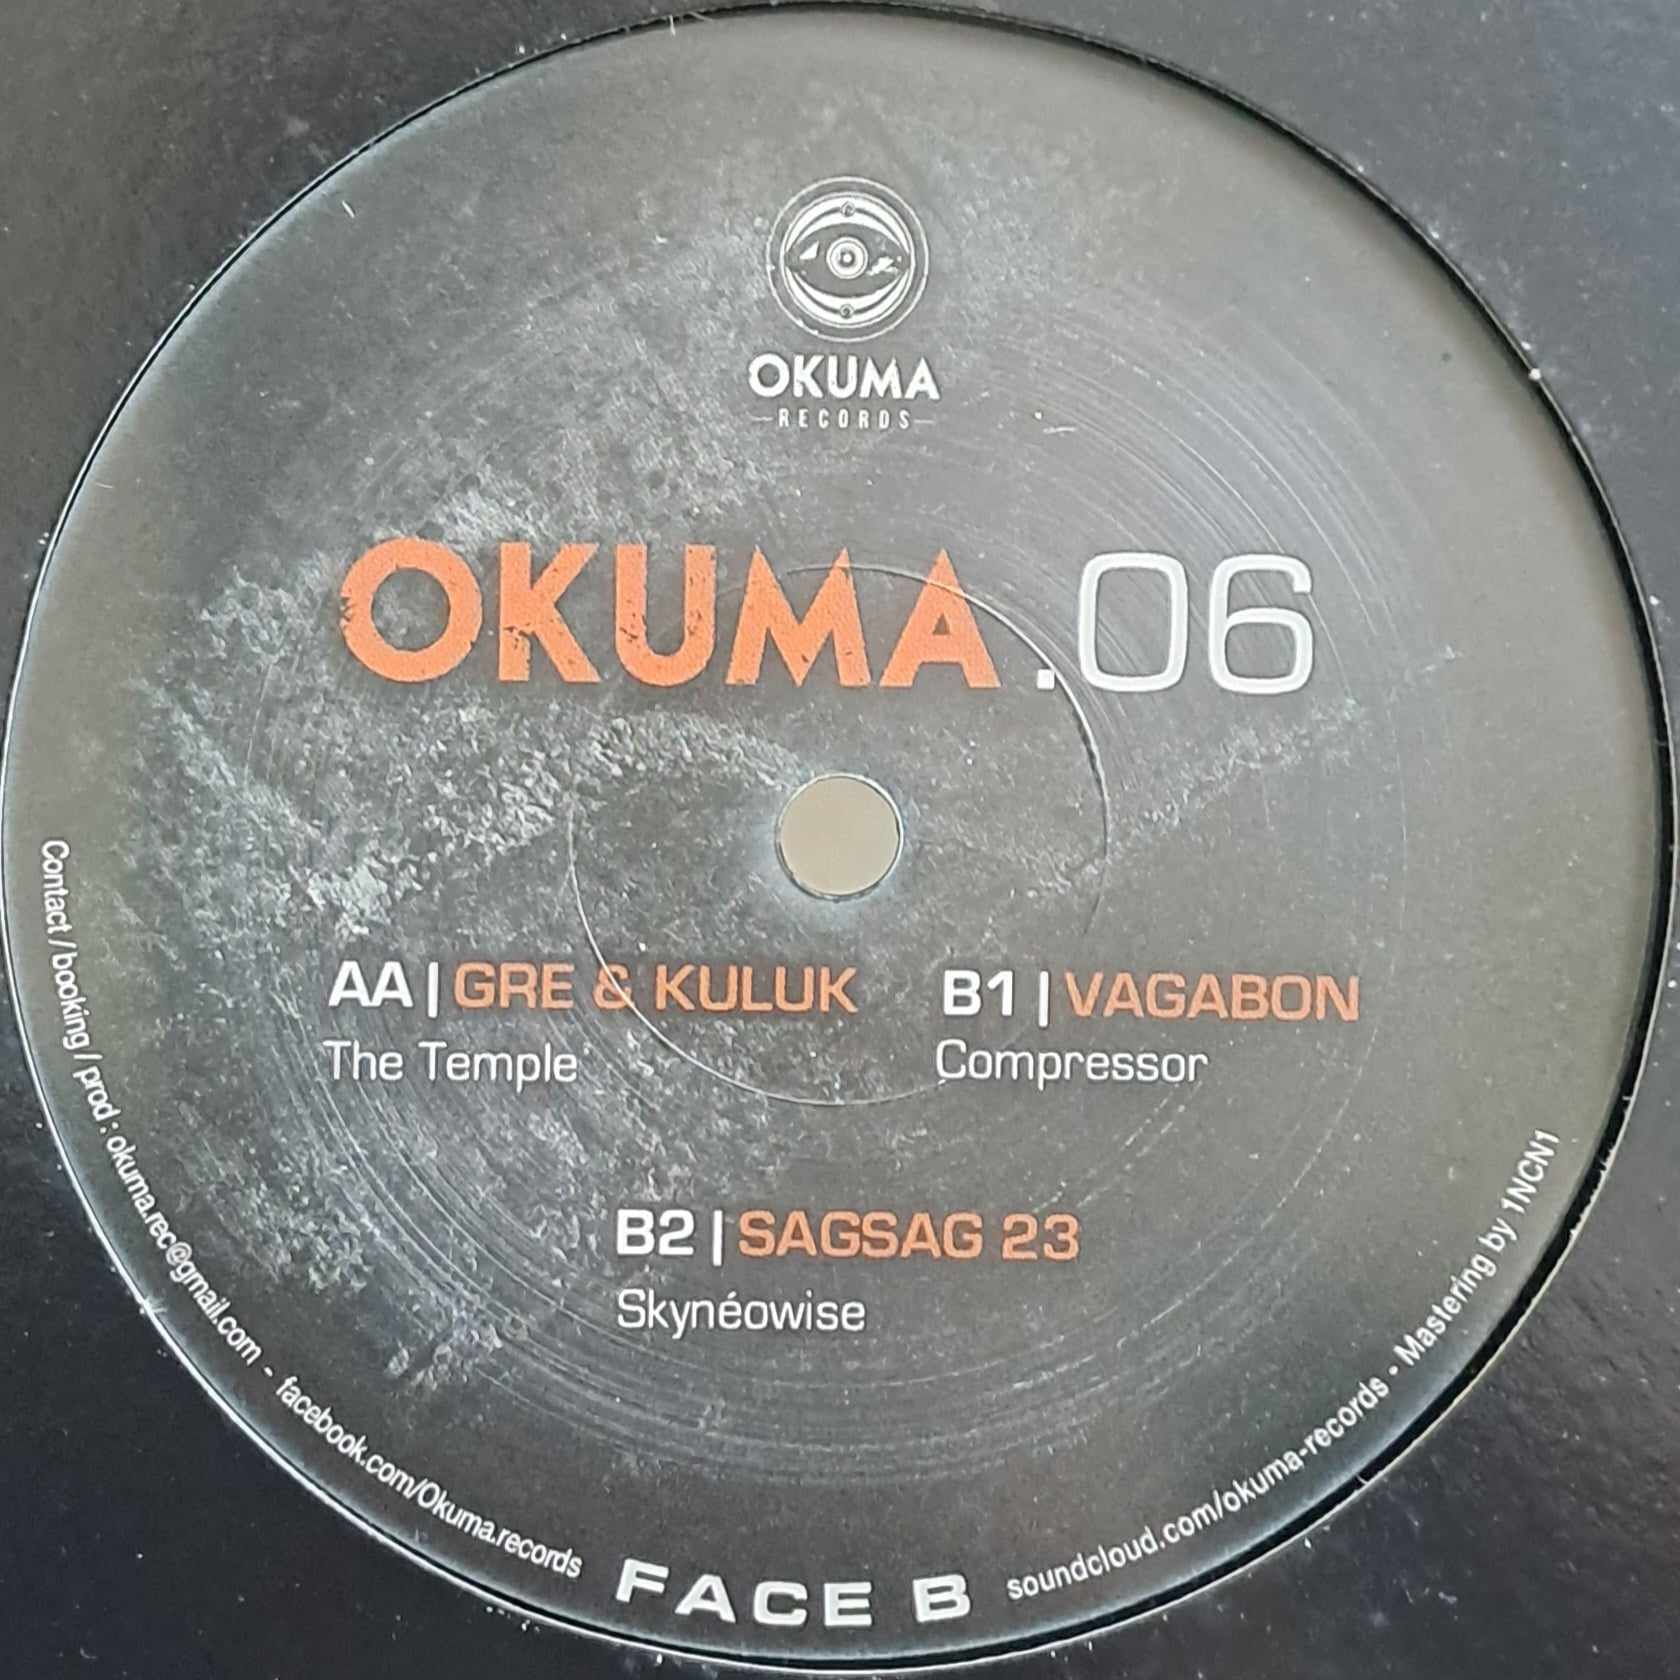 Okuma 06 (dernières copies en stock) - vinyle freetekno